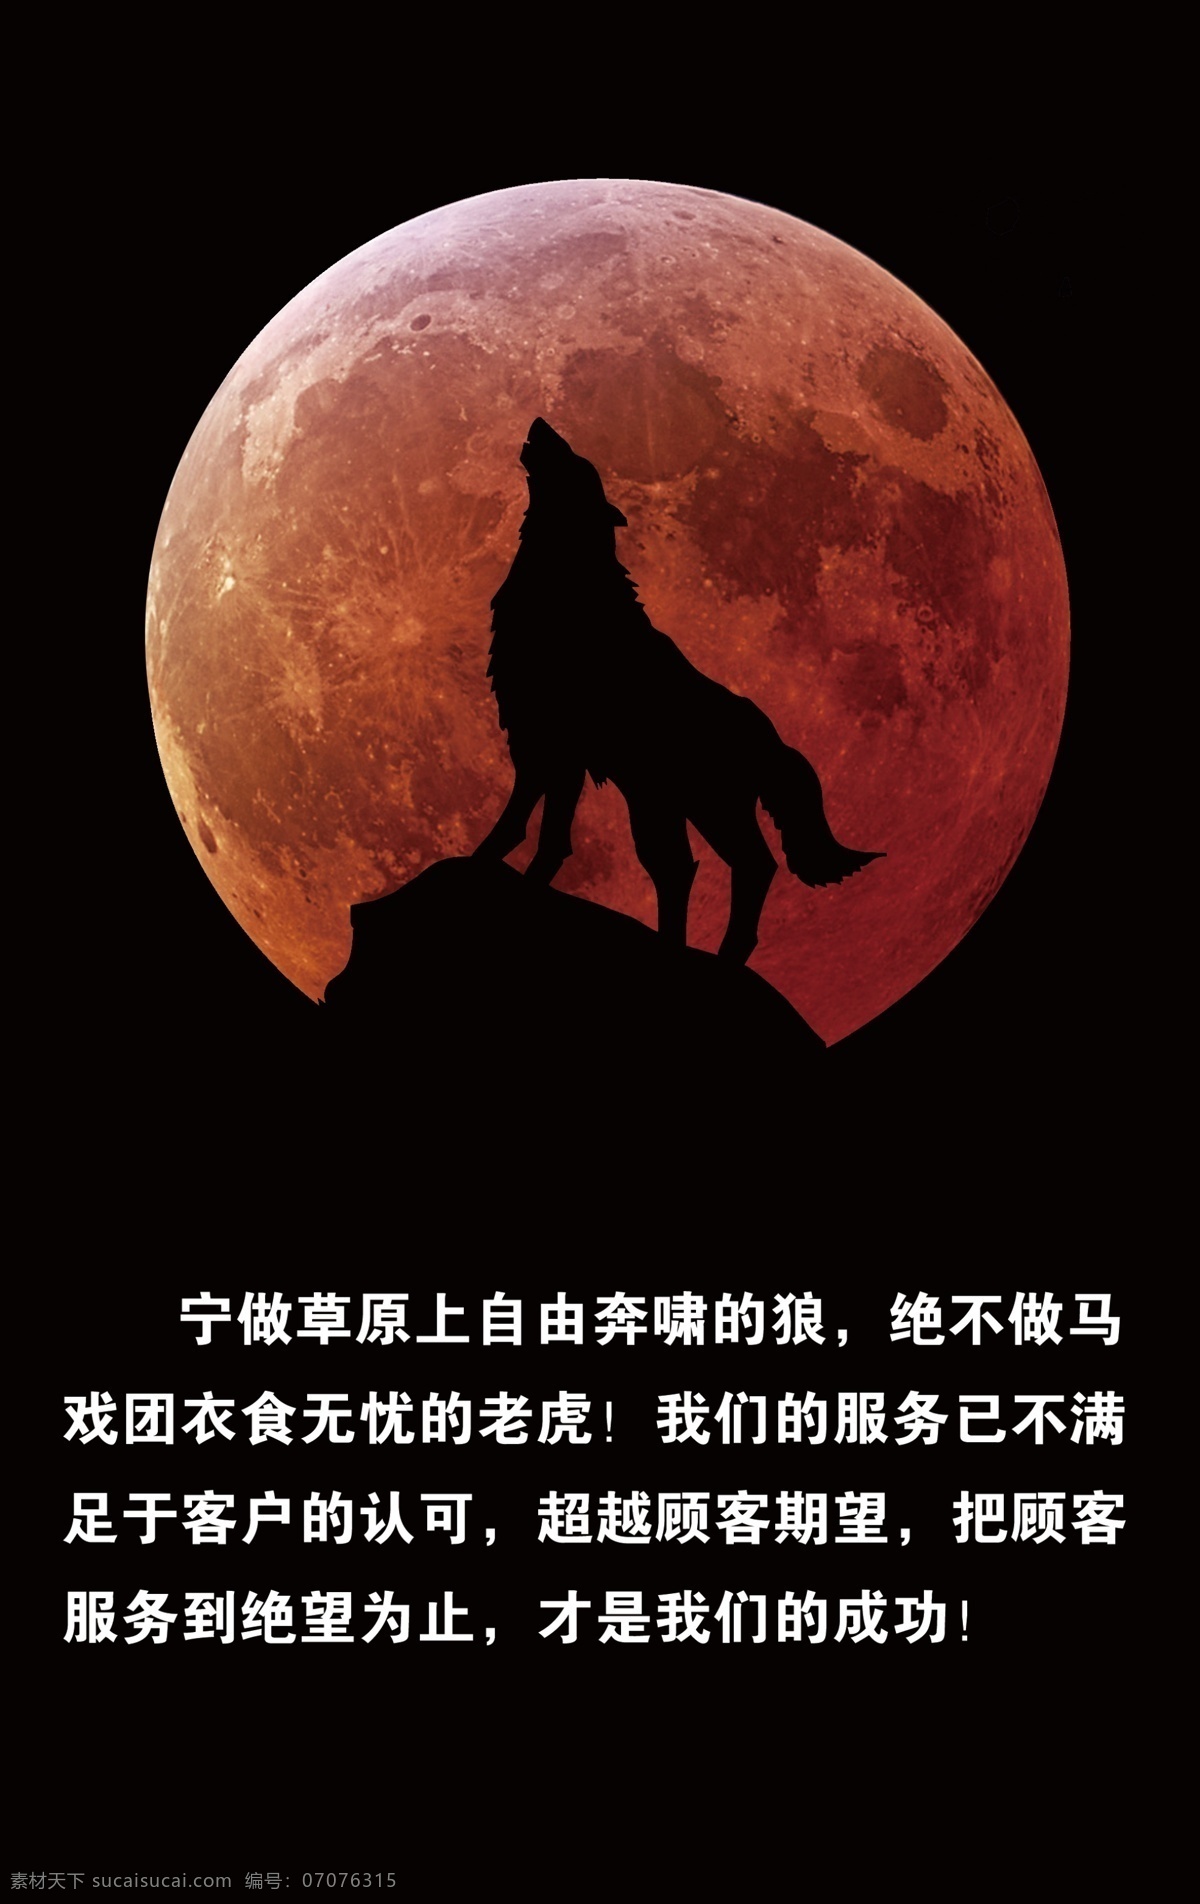 红月亮 狼的立志语 狼 狼月 狼嚎 分层 背景素材